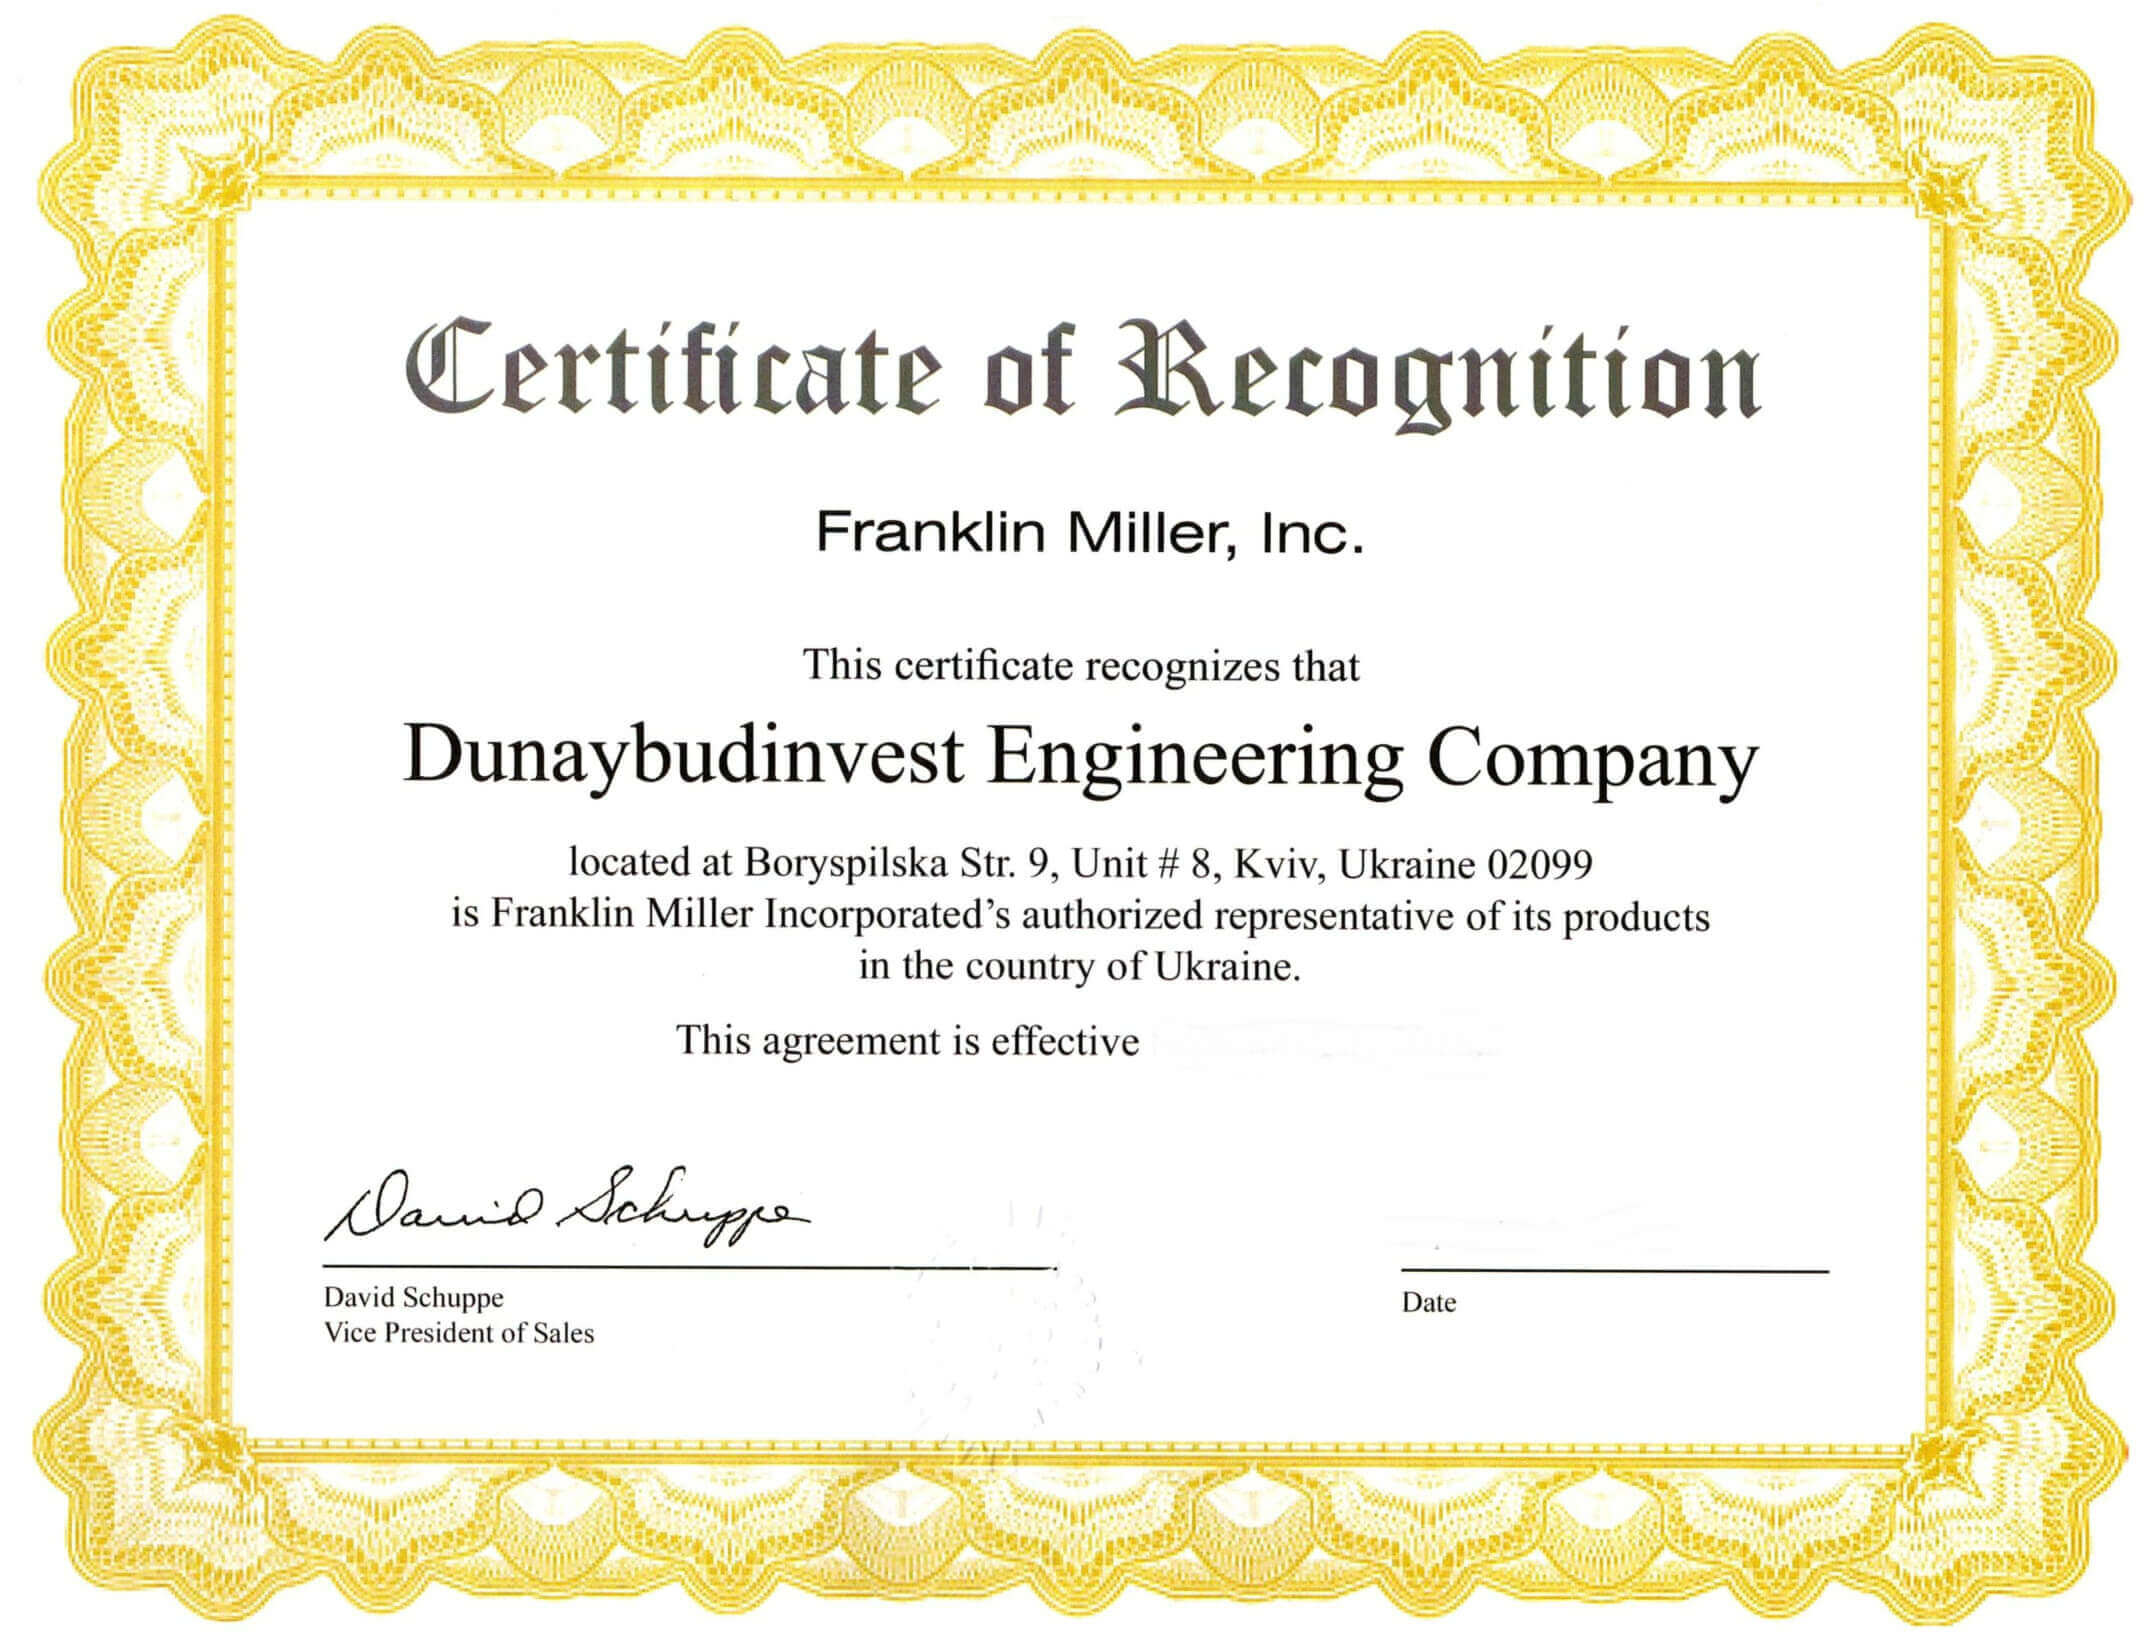 сертифікат франклін міллер дунайбудінвест